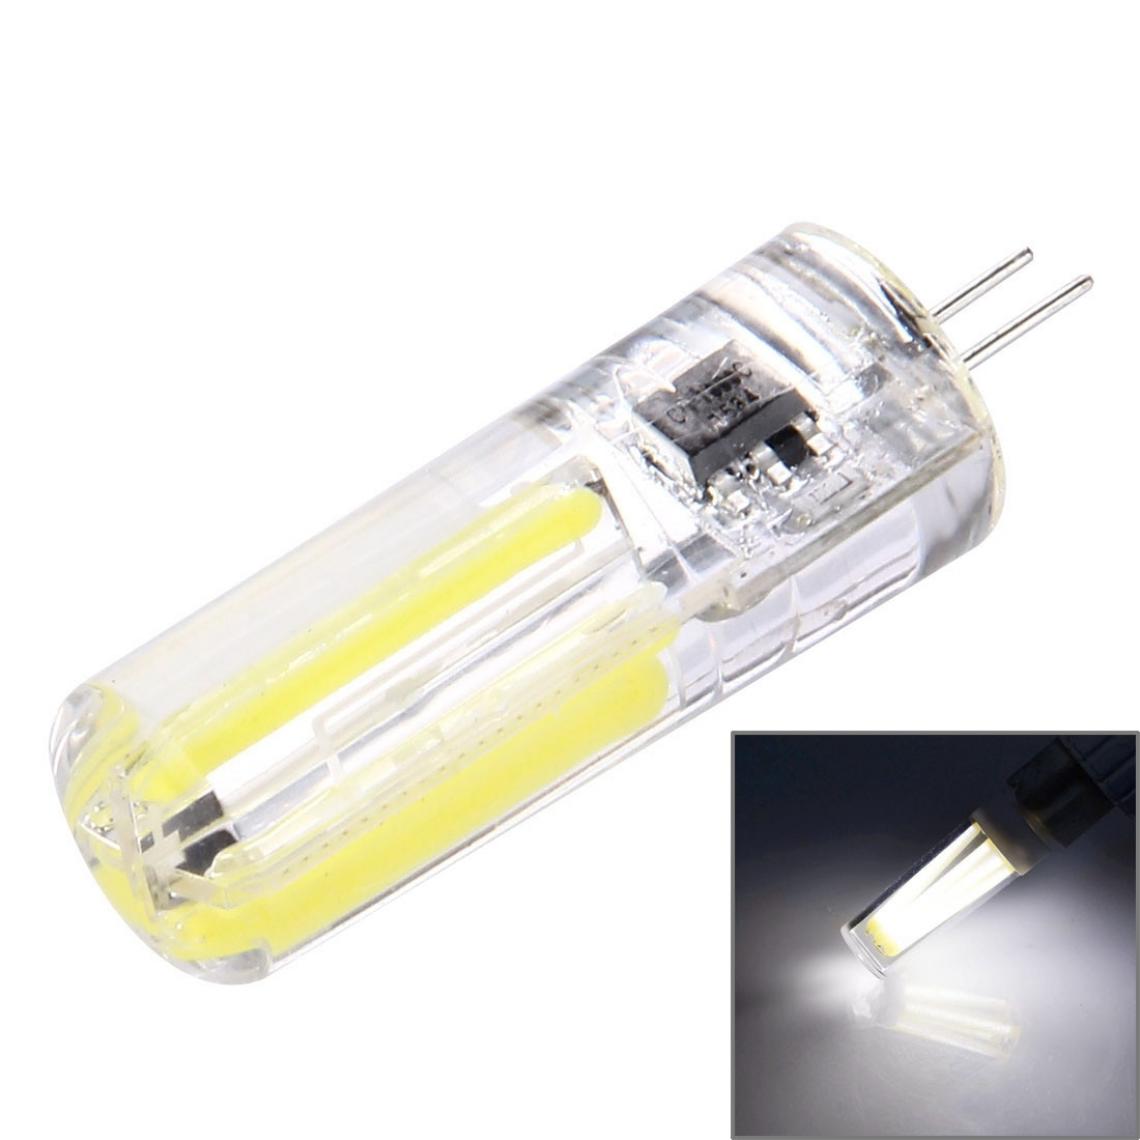 Wewoo - G4 4W ampoule à filament en silicone dimmable 8 LED pour hallsCA 220-240V lumière blanche - Ampoules LED